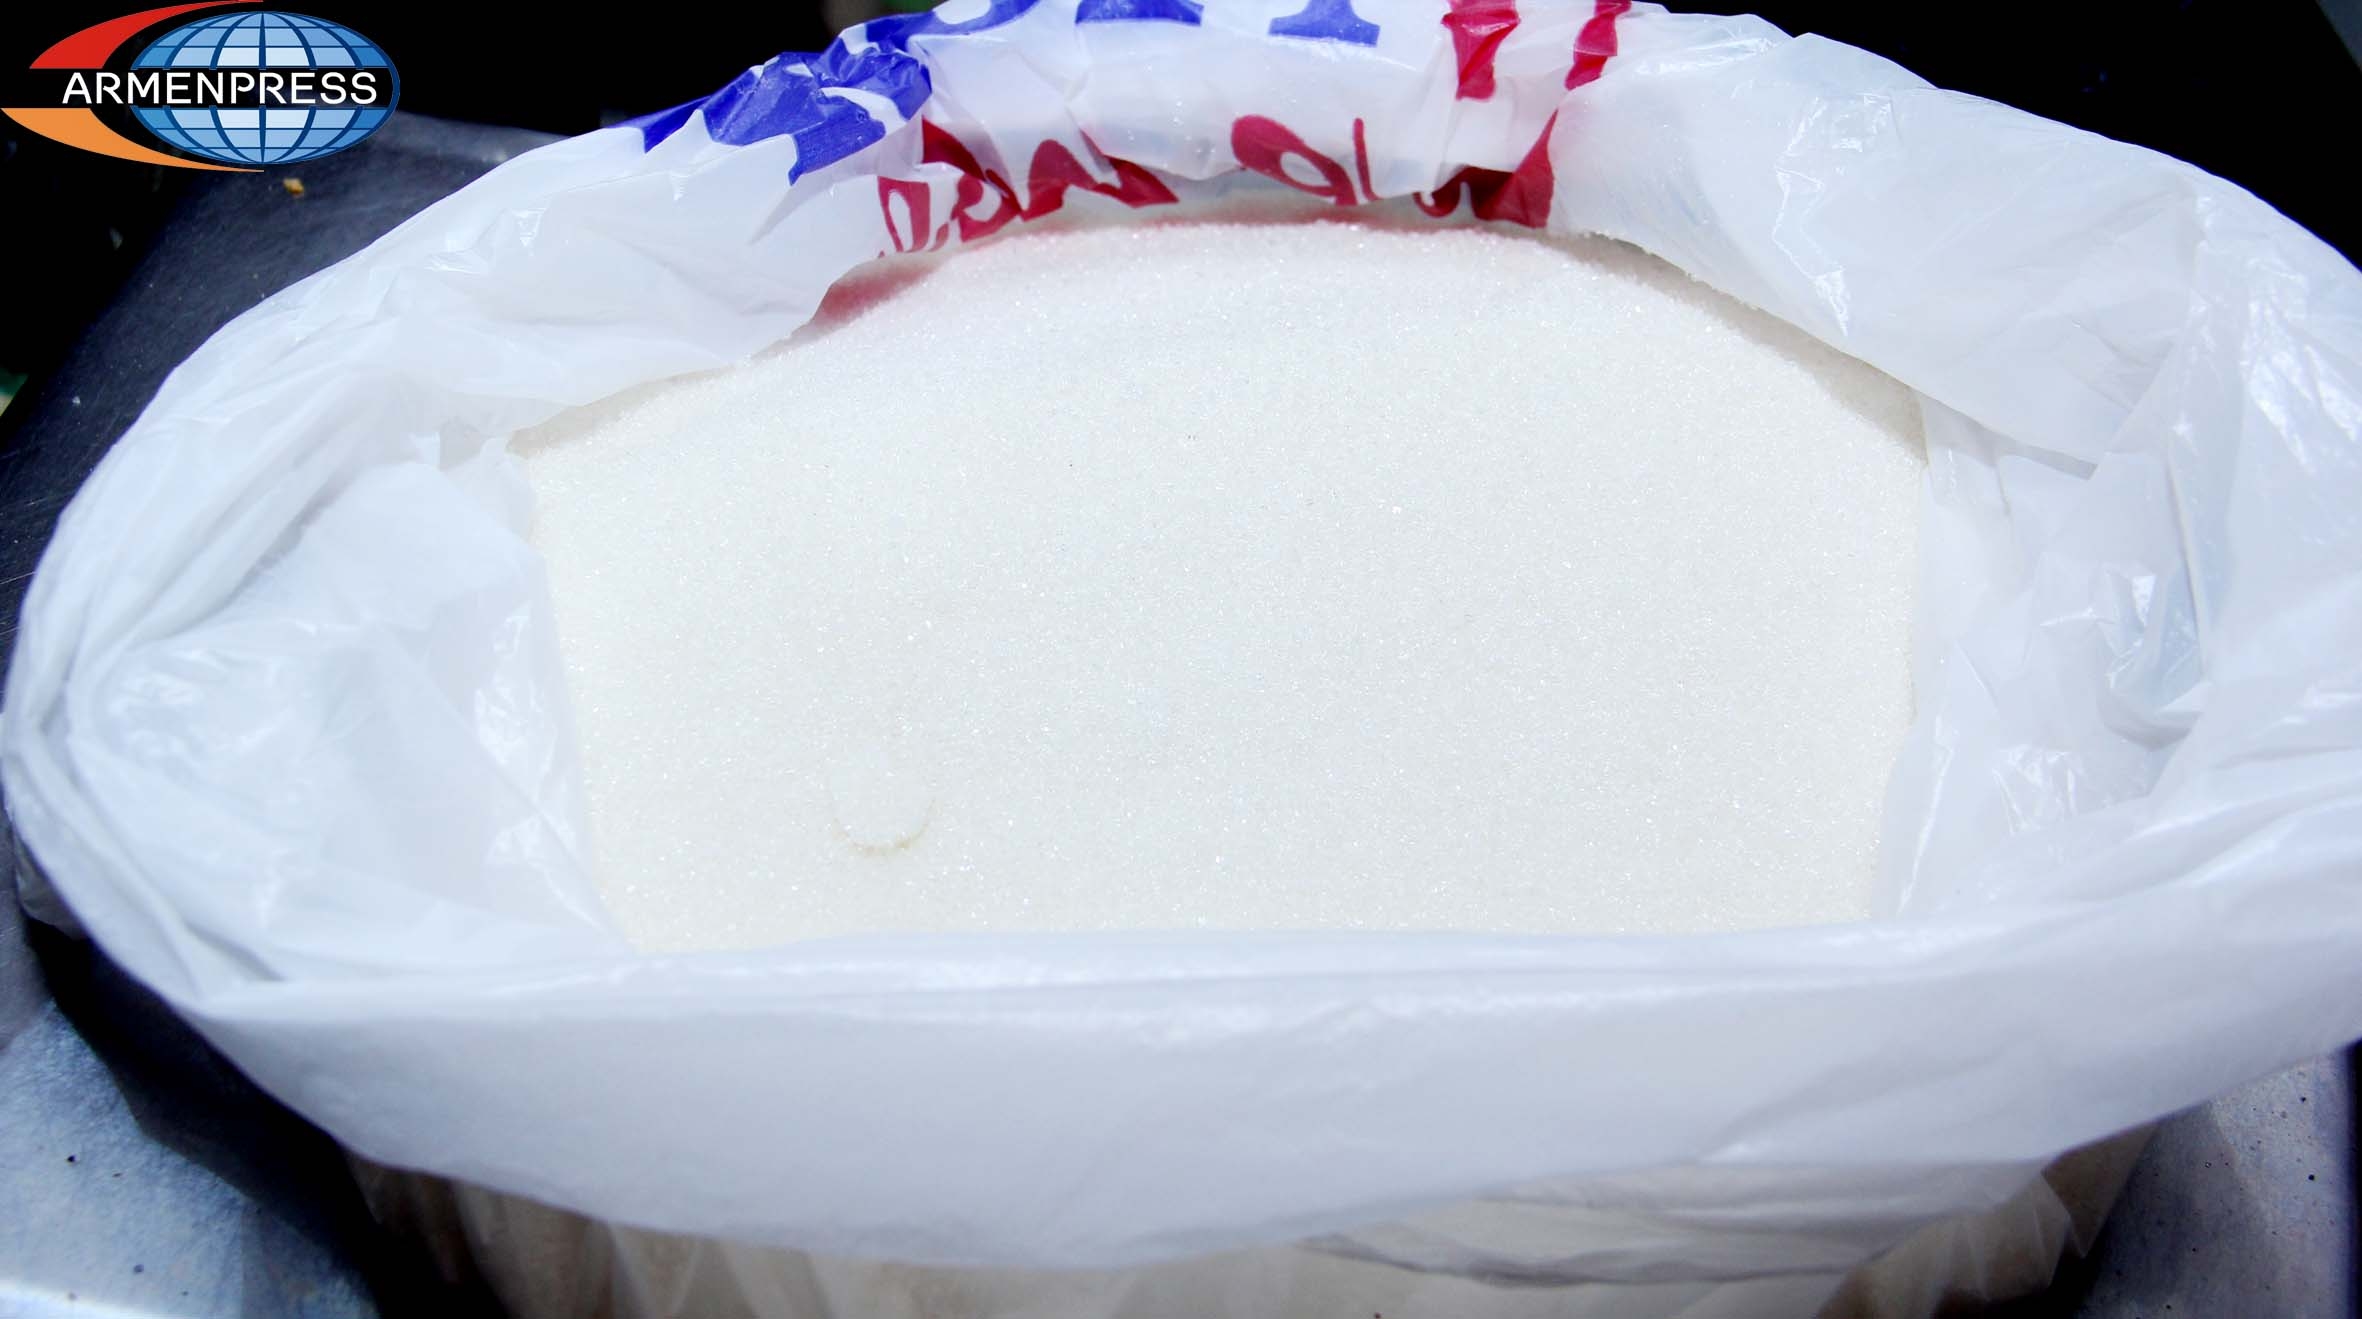 Հայաստանում արտադրվող շաքարի ծավալներն ավելացել են